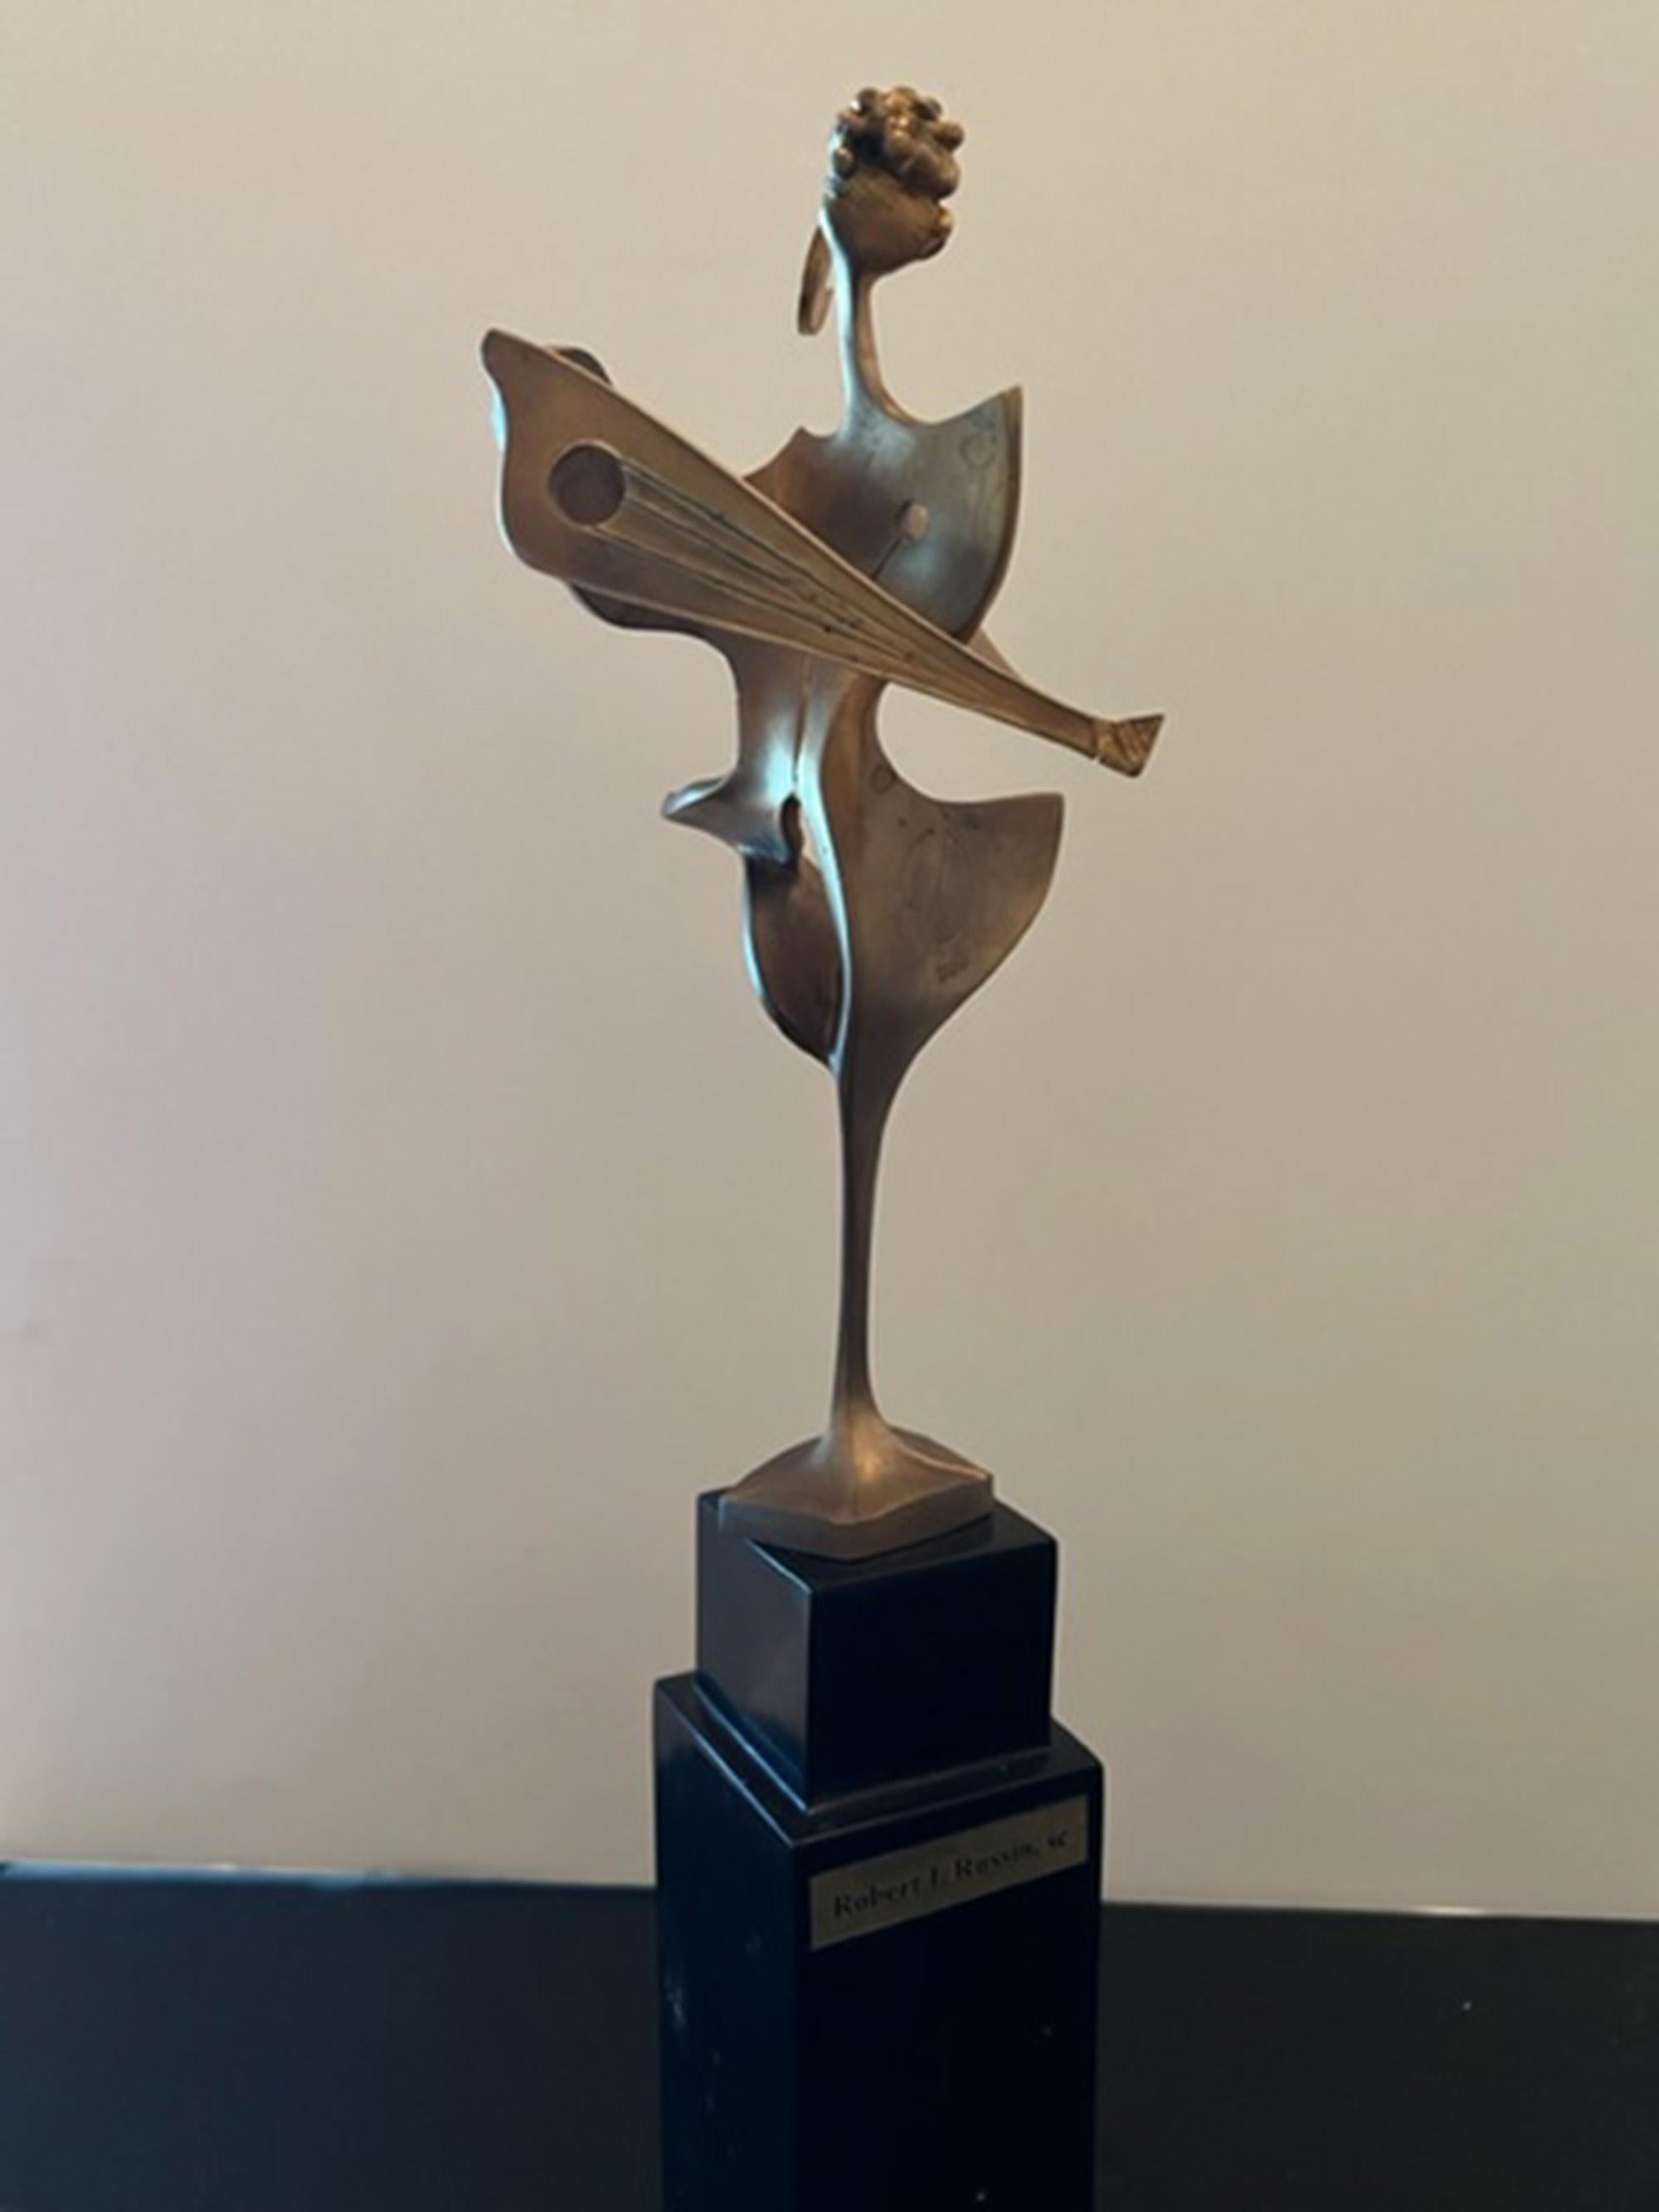 Wir sind stolz darauf, eine sehr frühe Originalbronze (1958) des amerikanischen Bildhauers Robert Russin präsentieren zu können.

Robert Russin begann seine Karriere als WPA-Bildhauer und erhielt im Laufe seiner Laufbahn Dutzende von öffentlichen